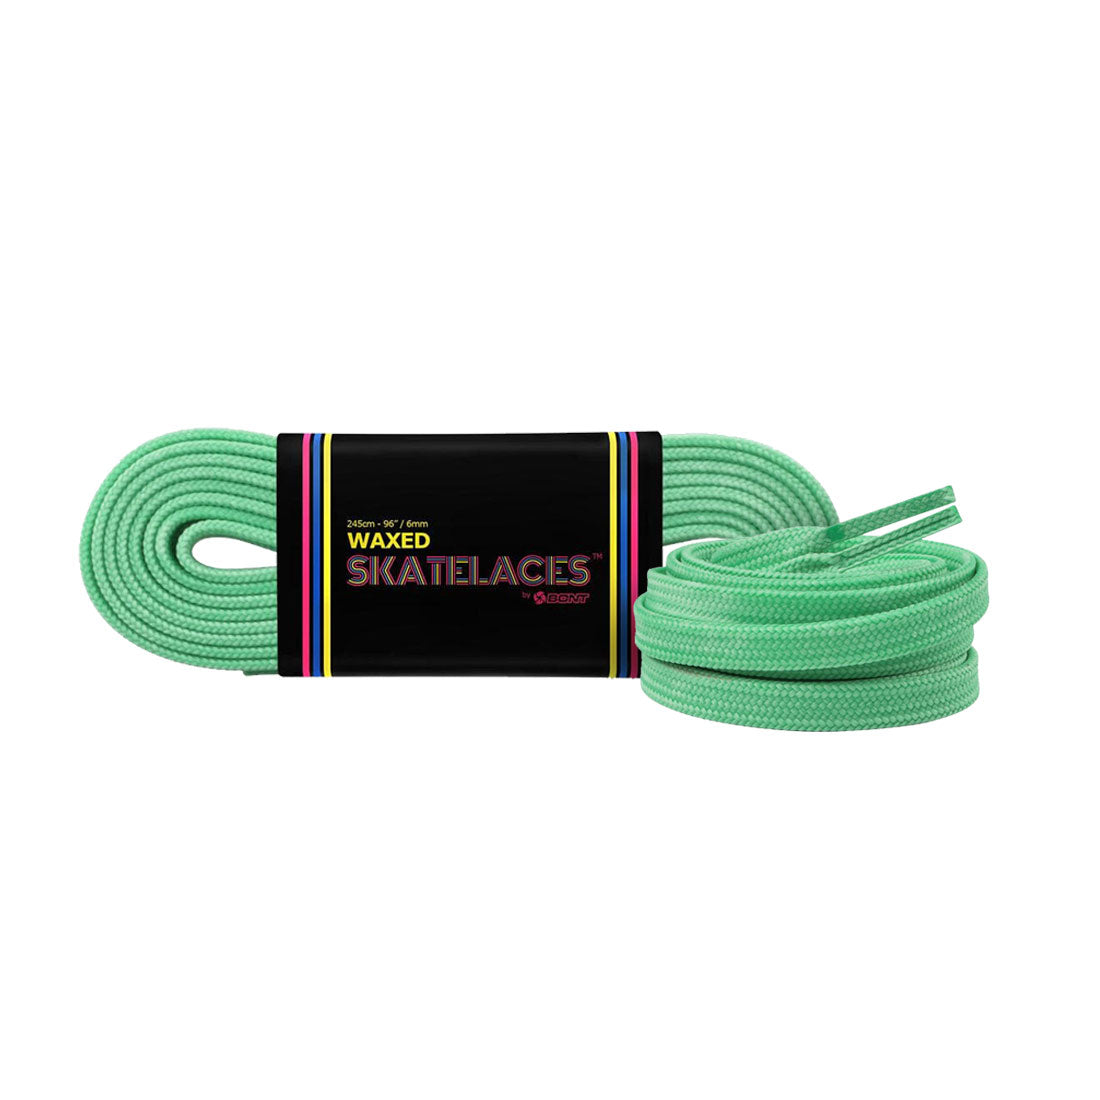 Bont Waxed 6mm Laces - 200cm/79in Pistachio Green Laces